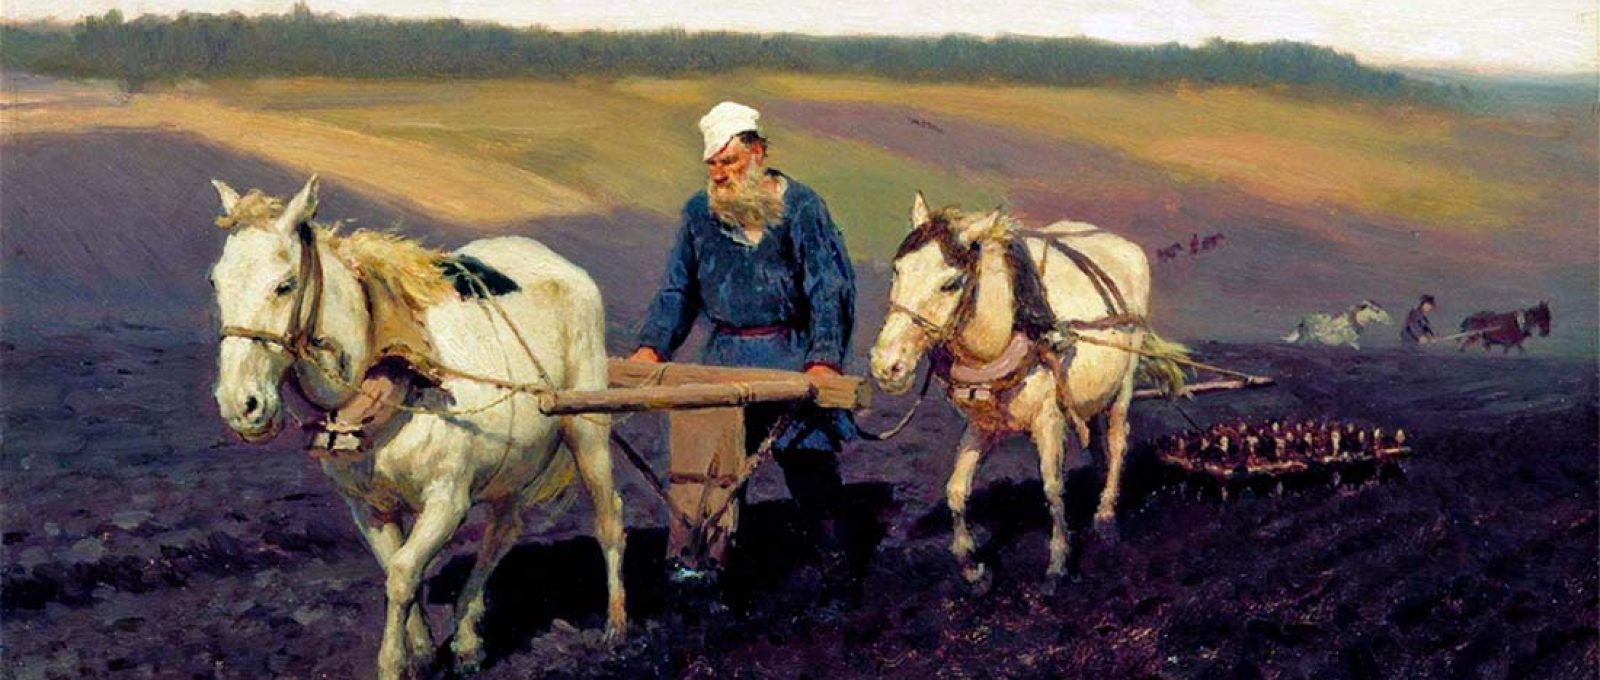 “Se queres ser universal, começa por pintar a tua aldeia.” – Leon Tolstói (“Tolstói arando o campo”, óleo sobre cartão, Ilya Repin, 1887).